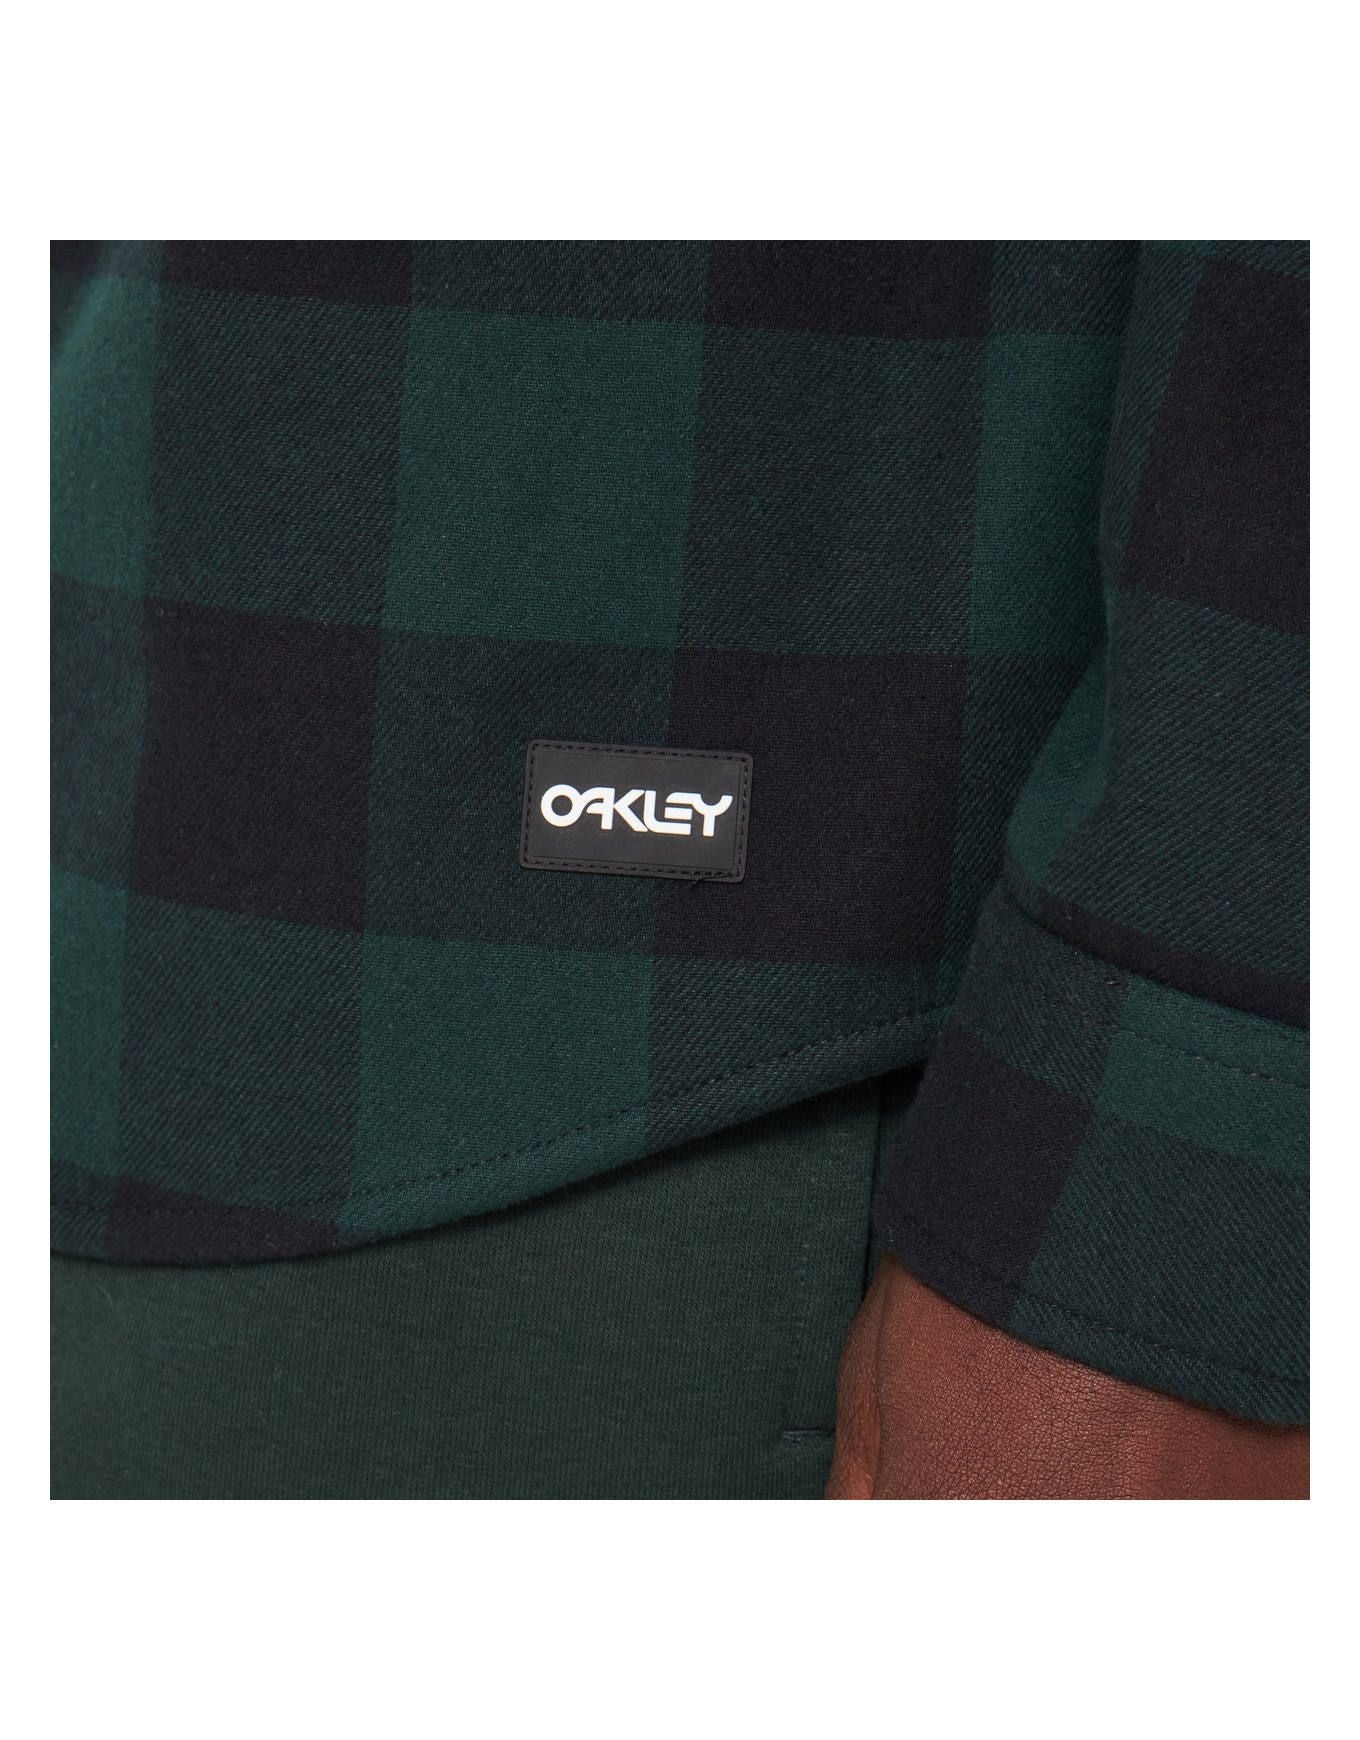 BEAR COZY FLANNEL -OakleyFOA402577-HUNTER GREEN/BLACK CHECK-S